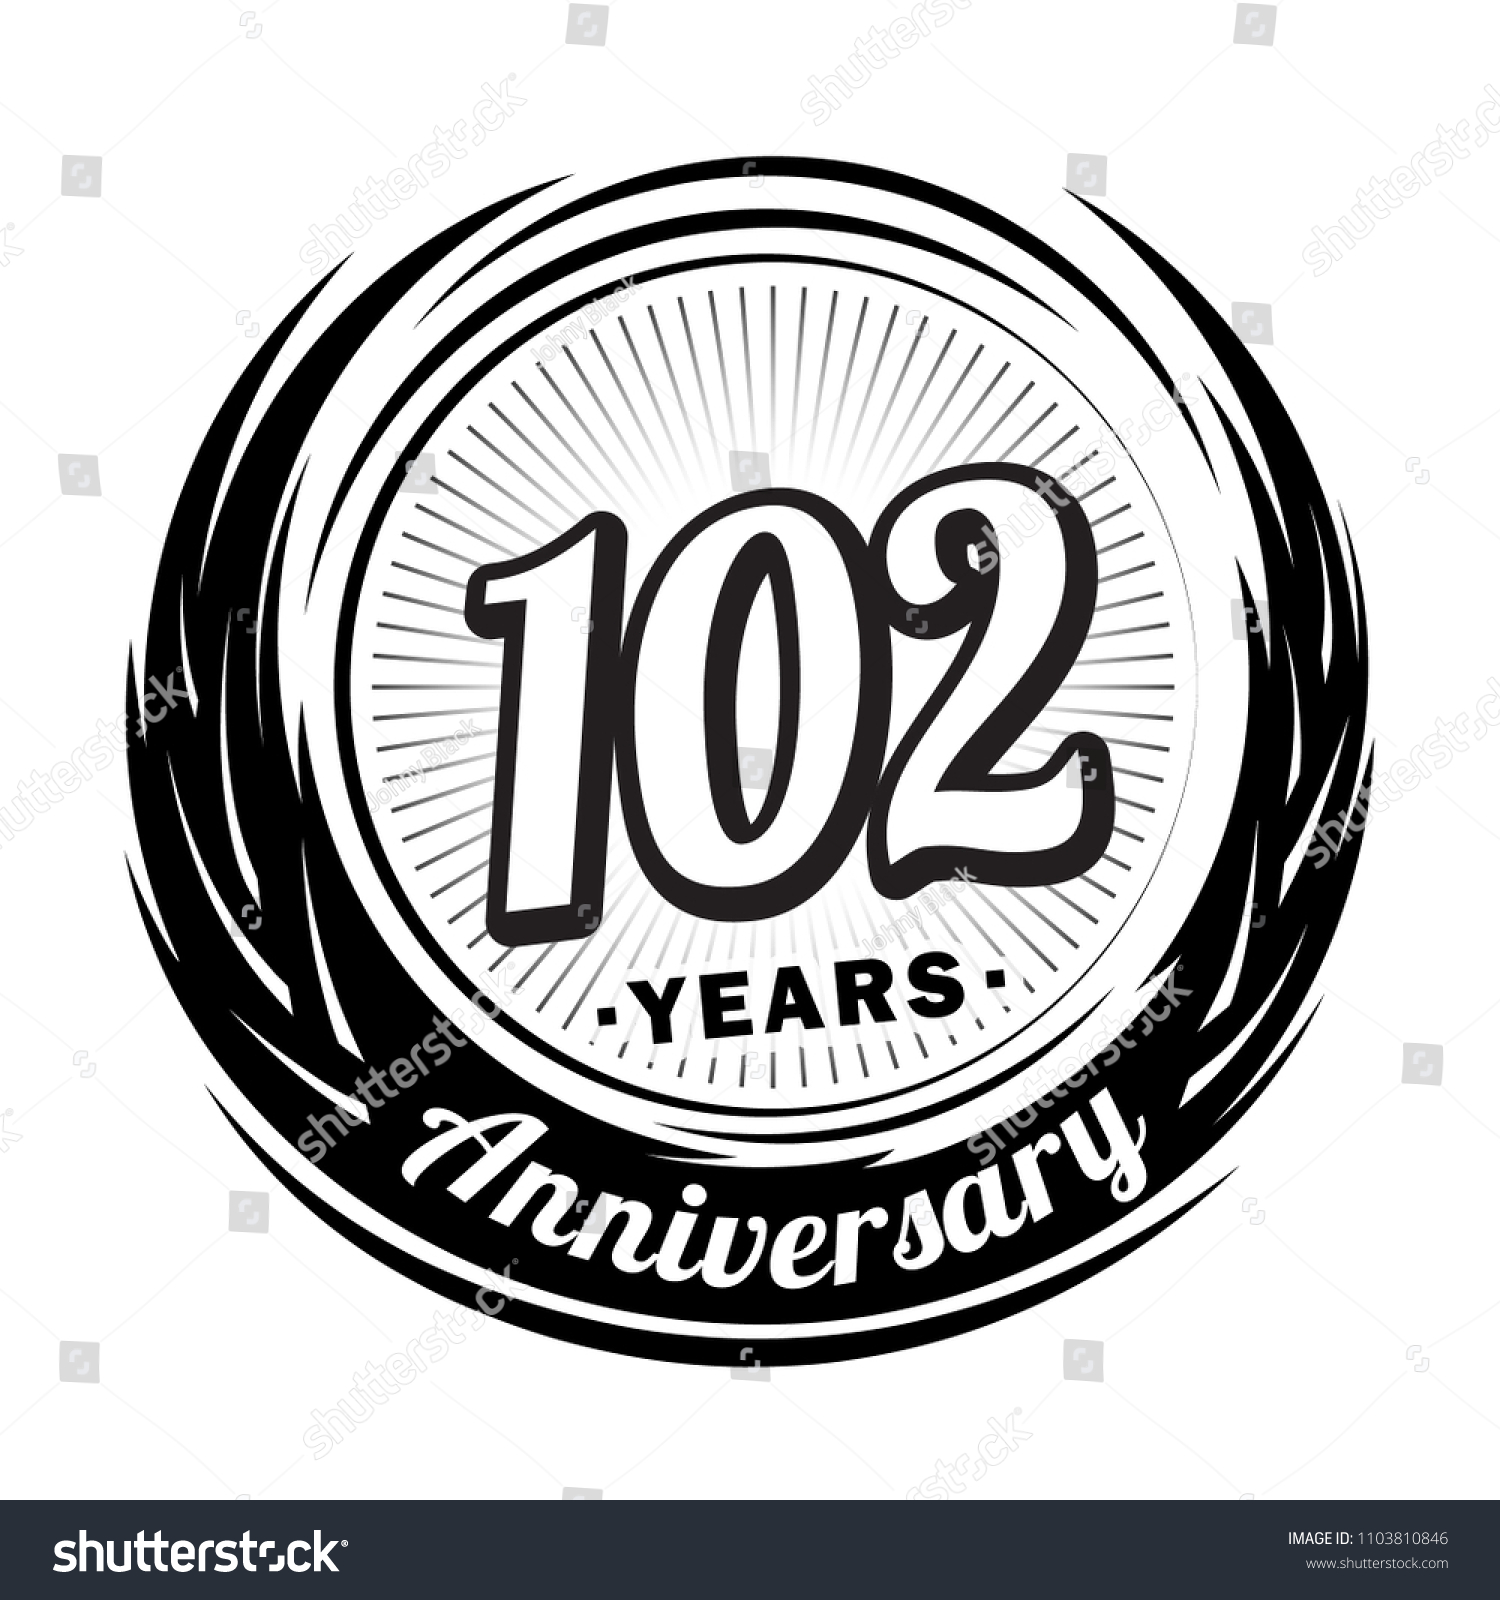 SVG of 102 years anniversary. Anniversary logo design. 102 years logo. svg